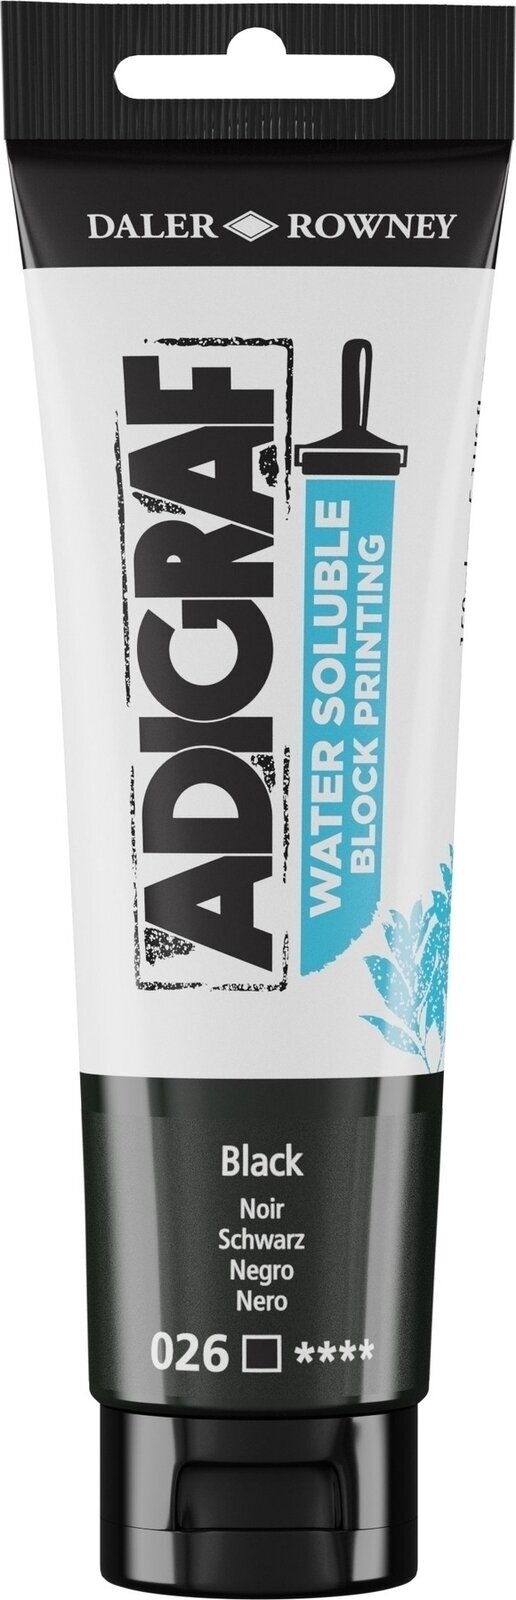 Verf voor linosnede Daler Rowney Adigraf Block Printing Water Soluble Colour Verf voor linosnede Black 150 ml